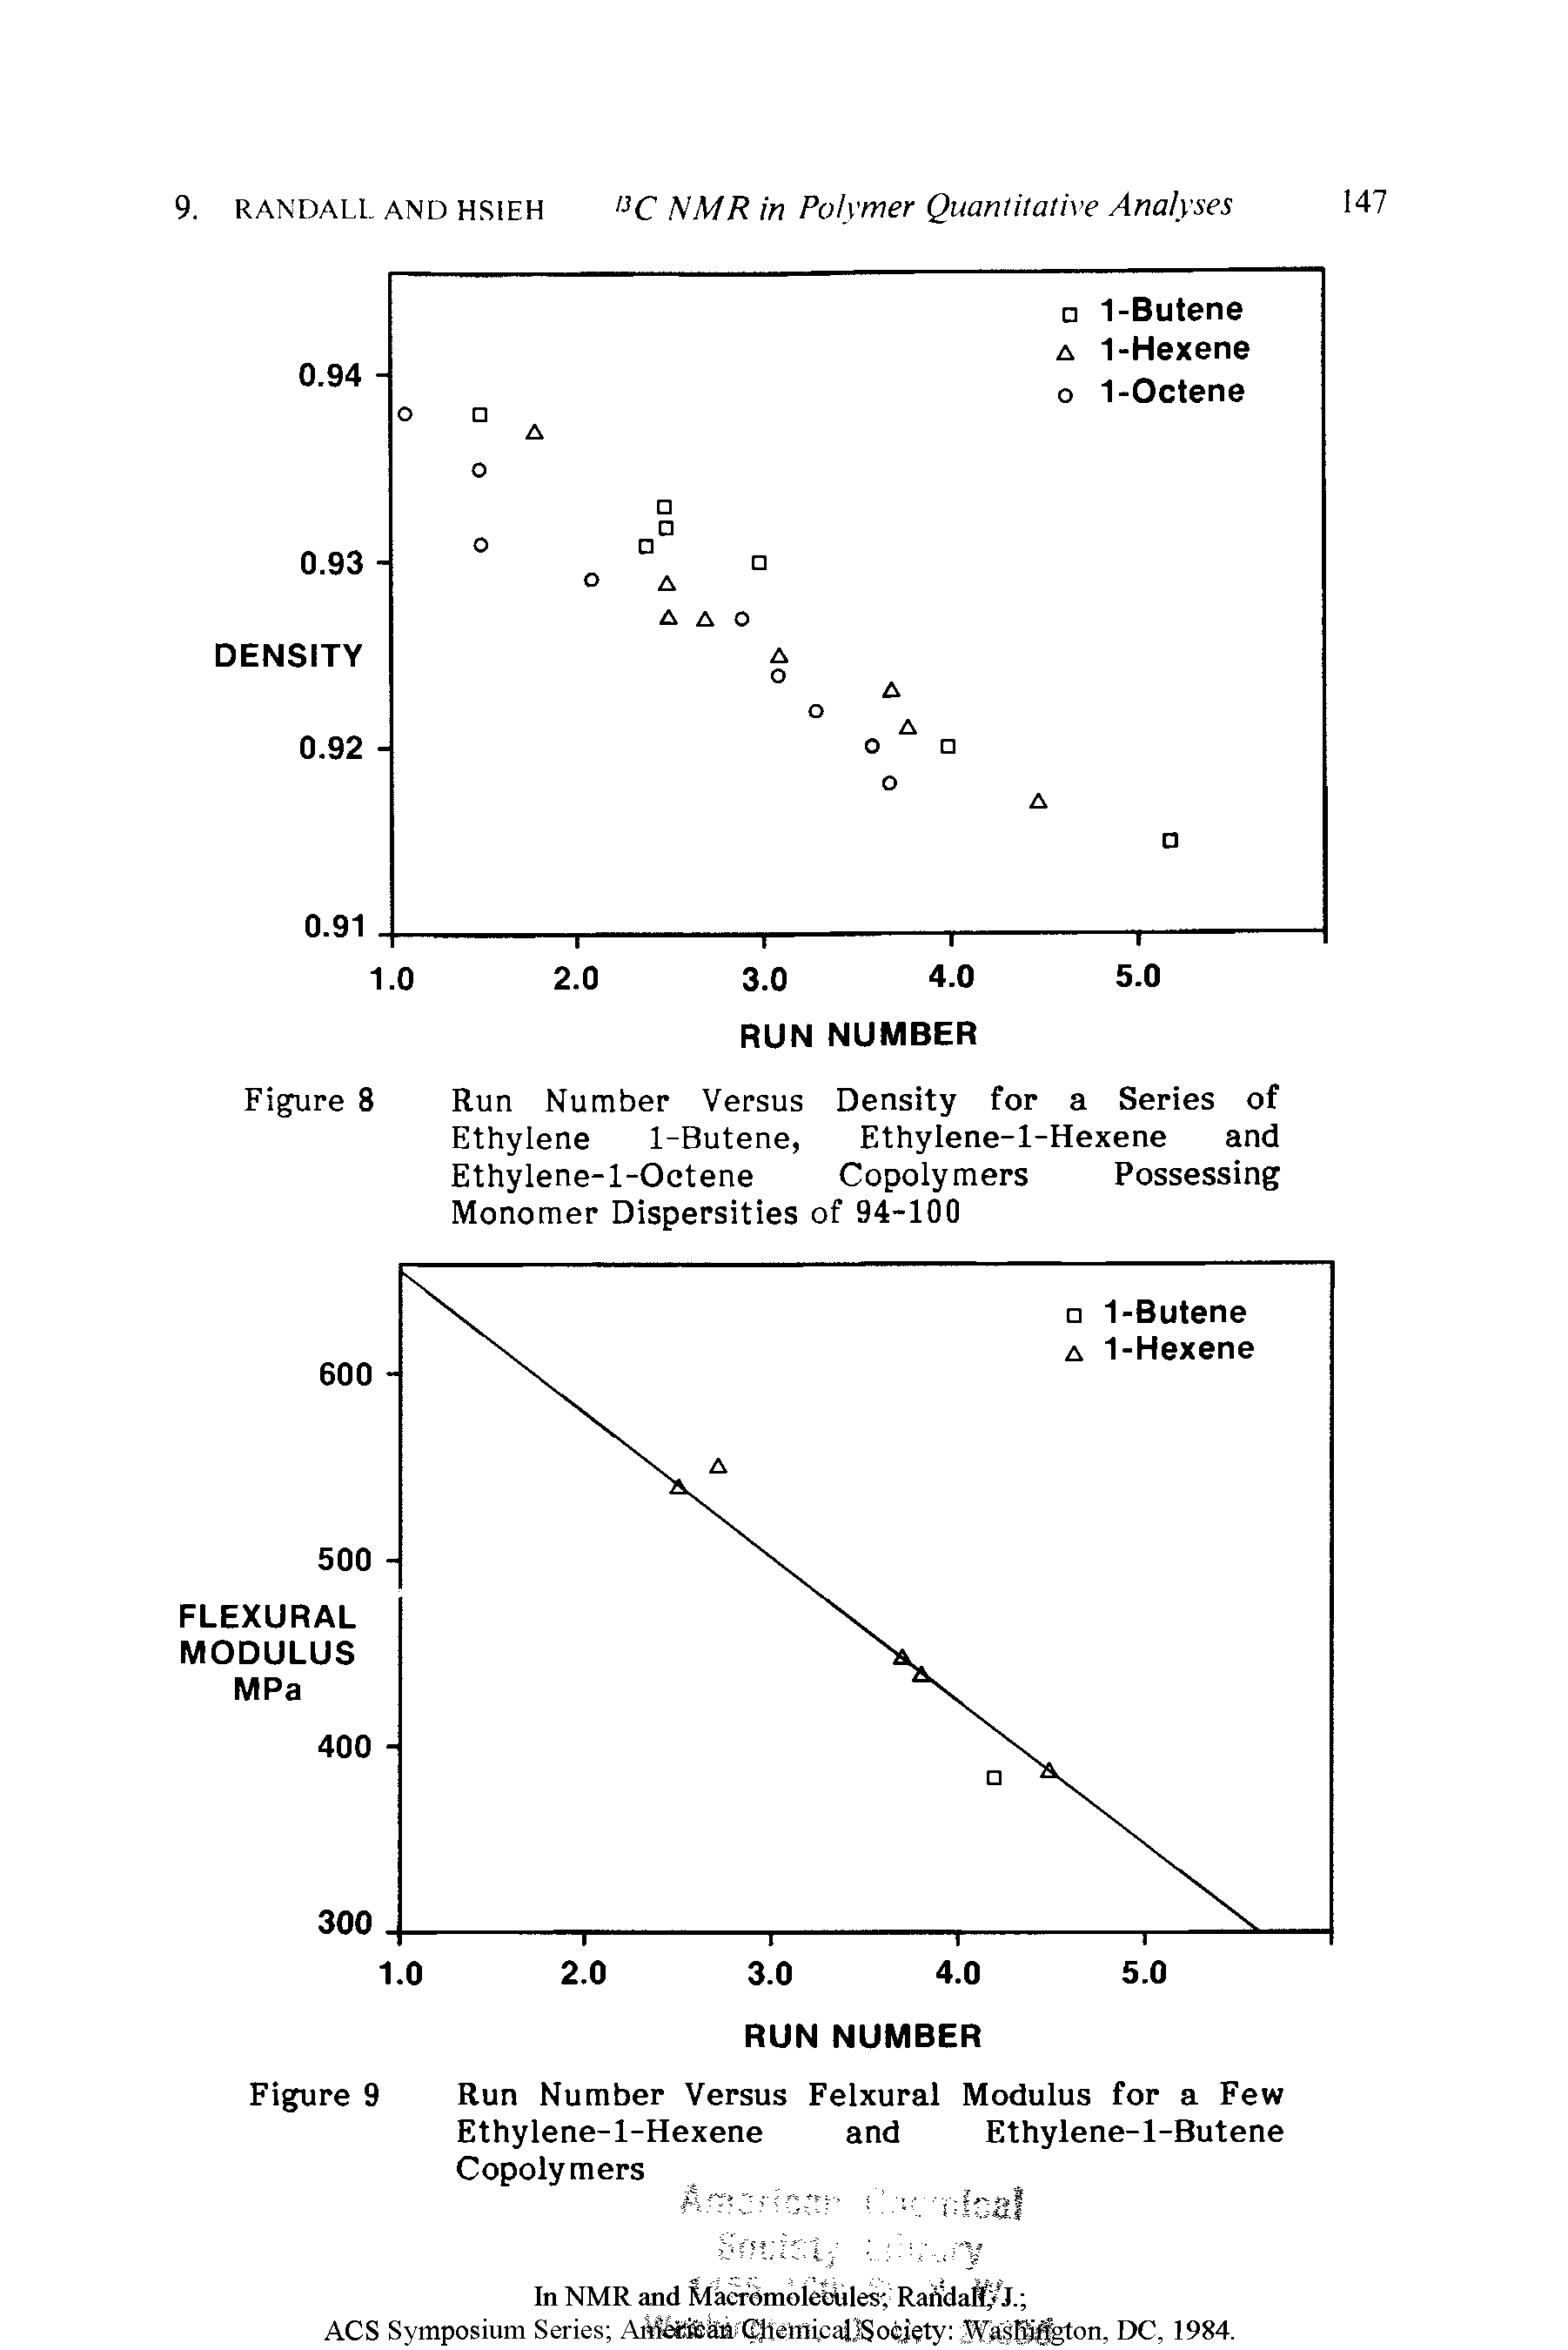 Figure 8 Run Number Versus Density for a Series of Ethylene 1-Butene, Ethylene-l-Hexene and Ethylene-l-Octene Copolymers Possessing Monomer Dispersities of 94-100...